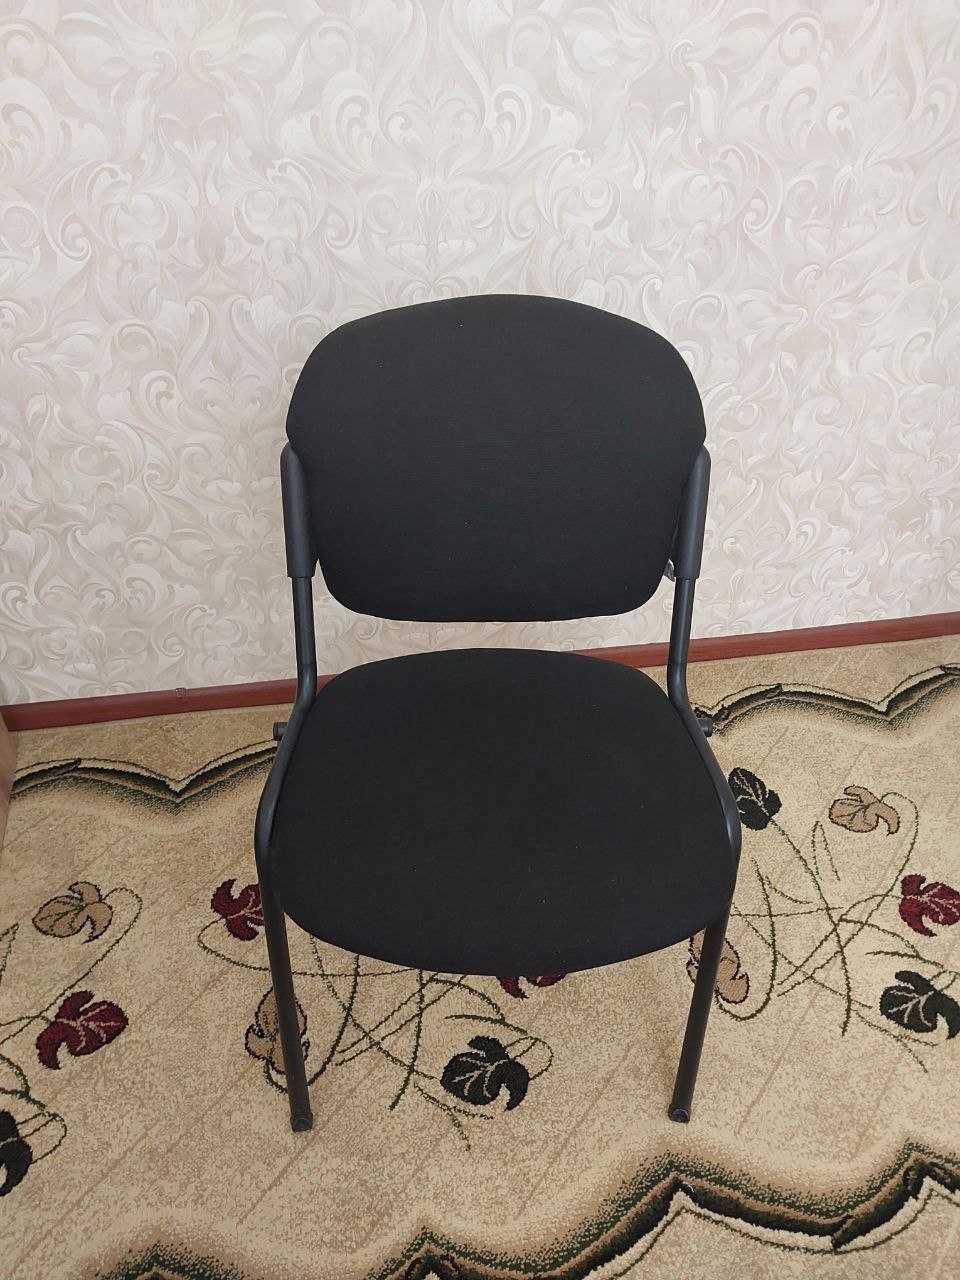 Стол стульчик комплект (1 стол, 2 стульчика) отдельно не продаеться